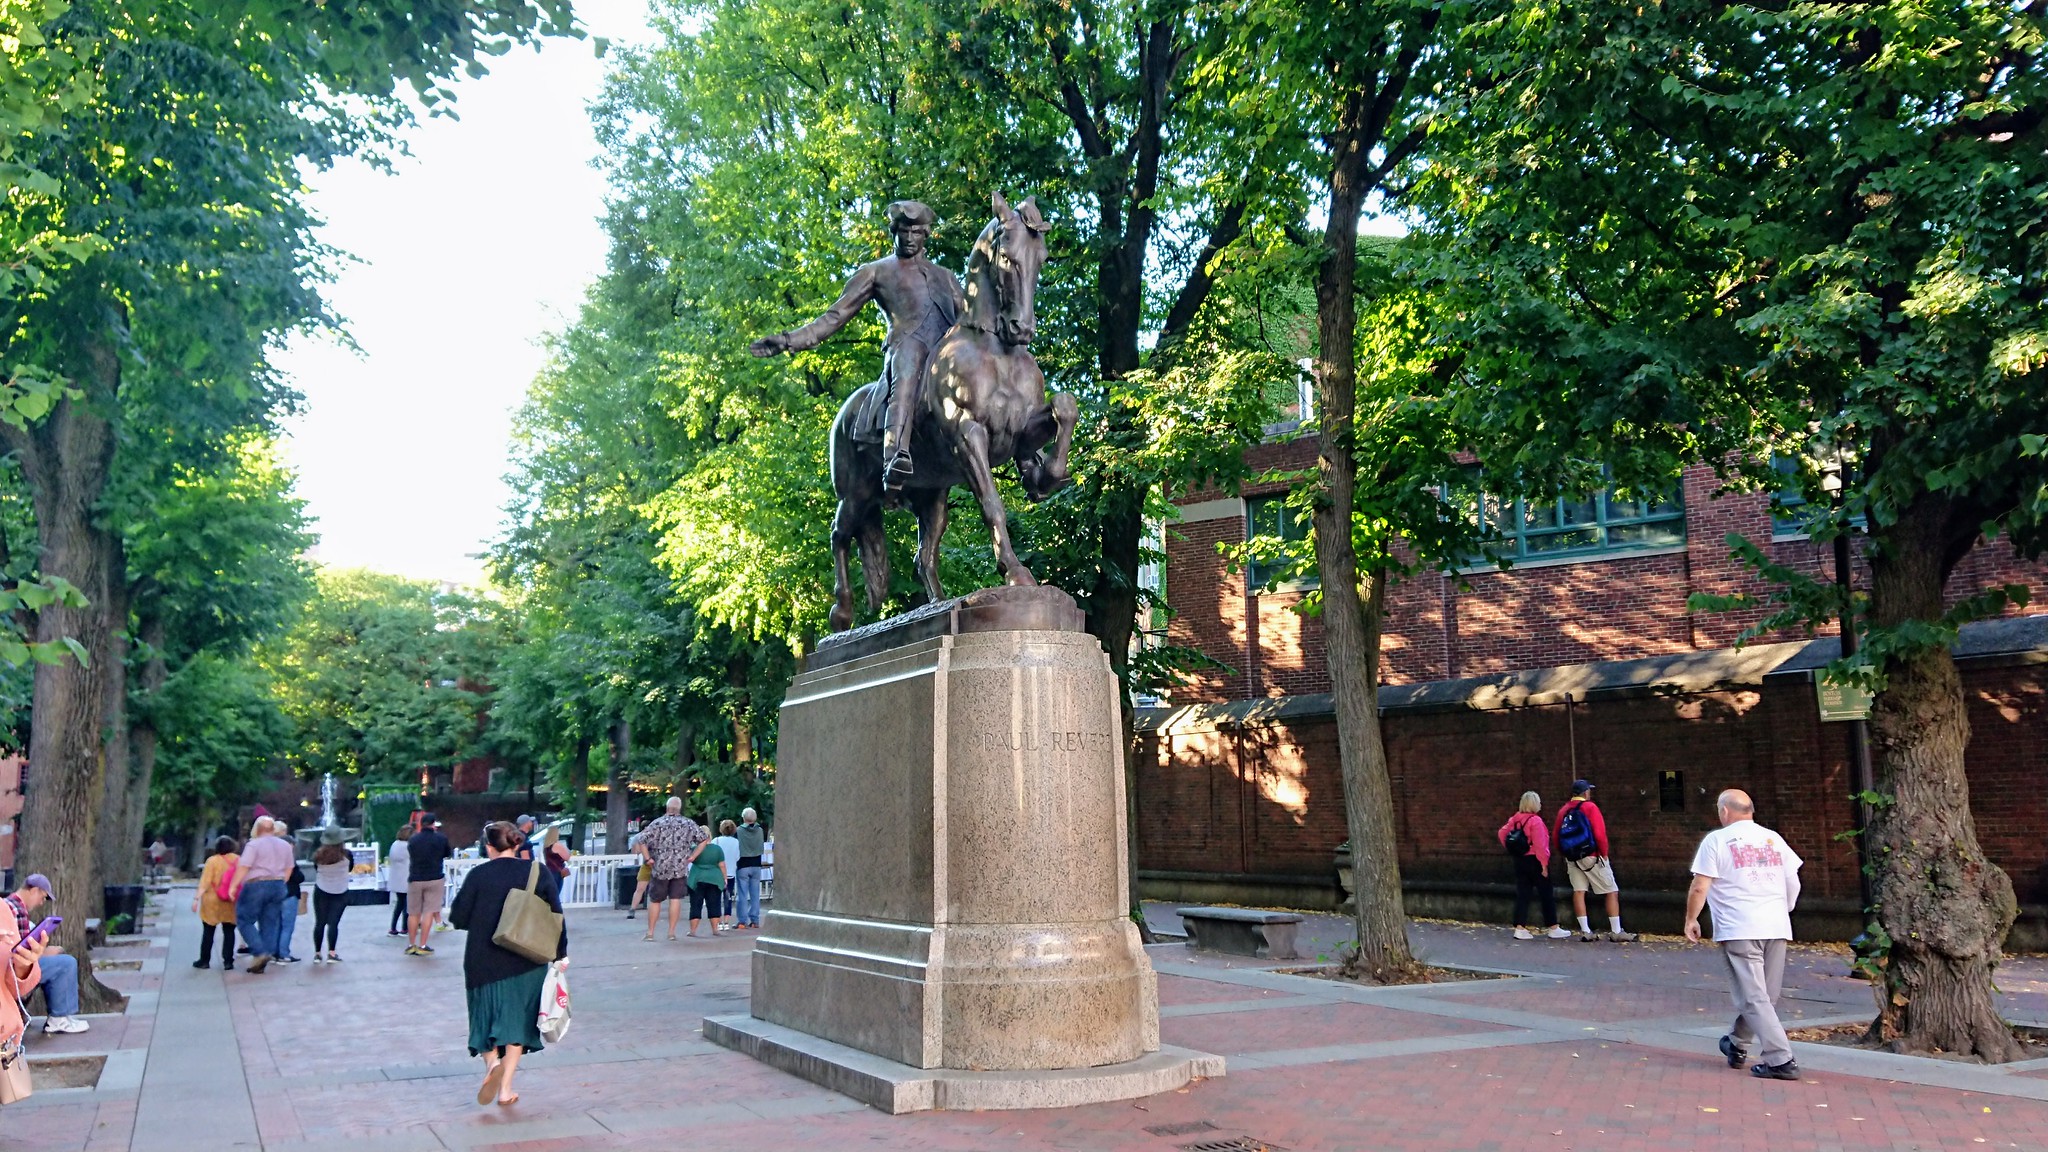 Paul Revere Statue - Freedom Trail - Boston, MA